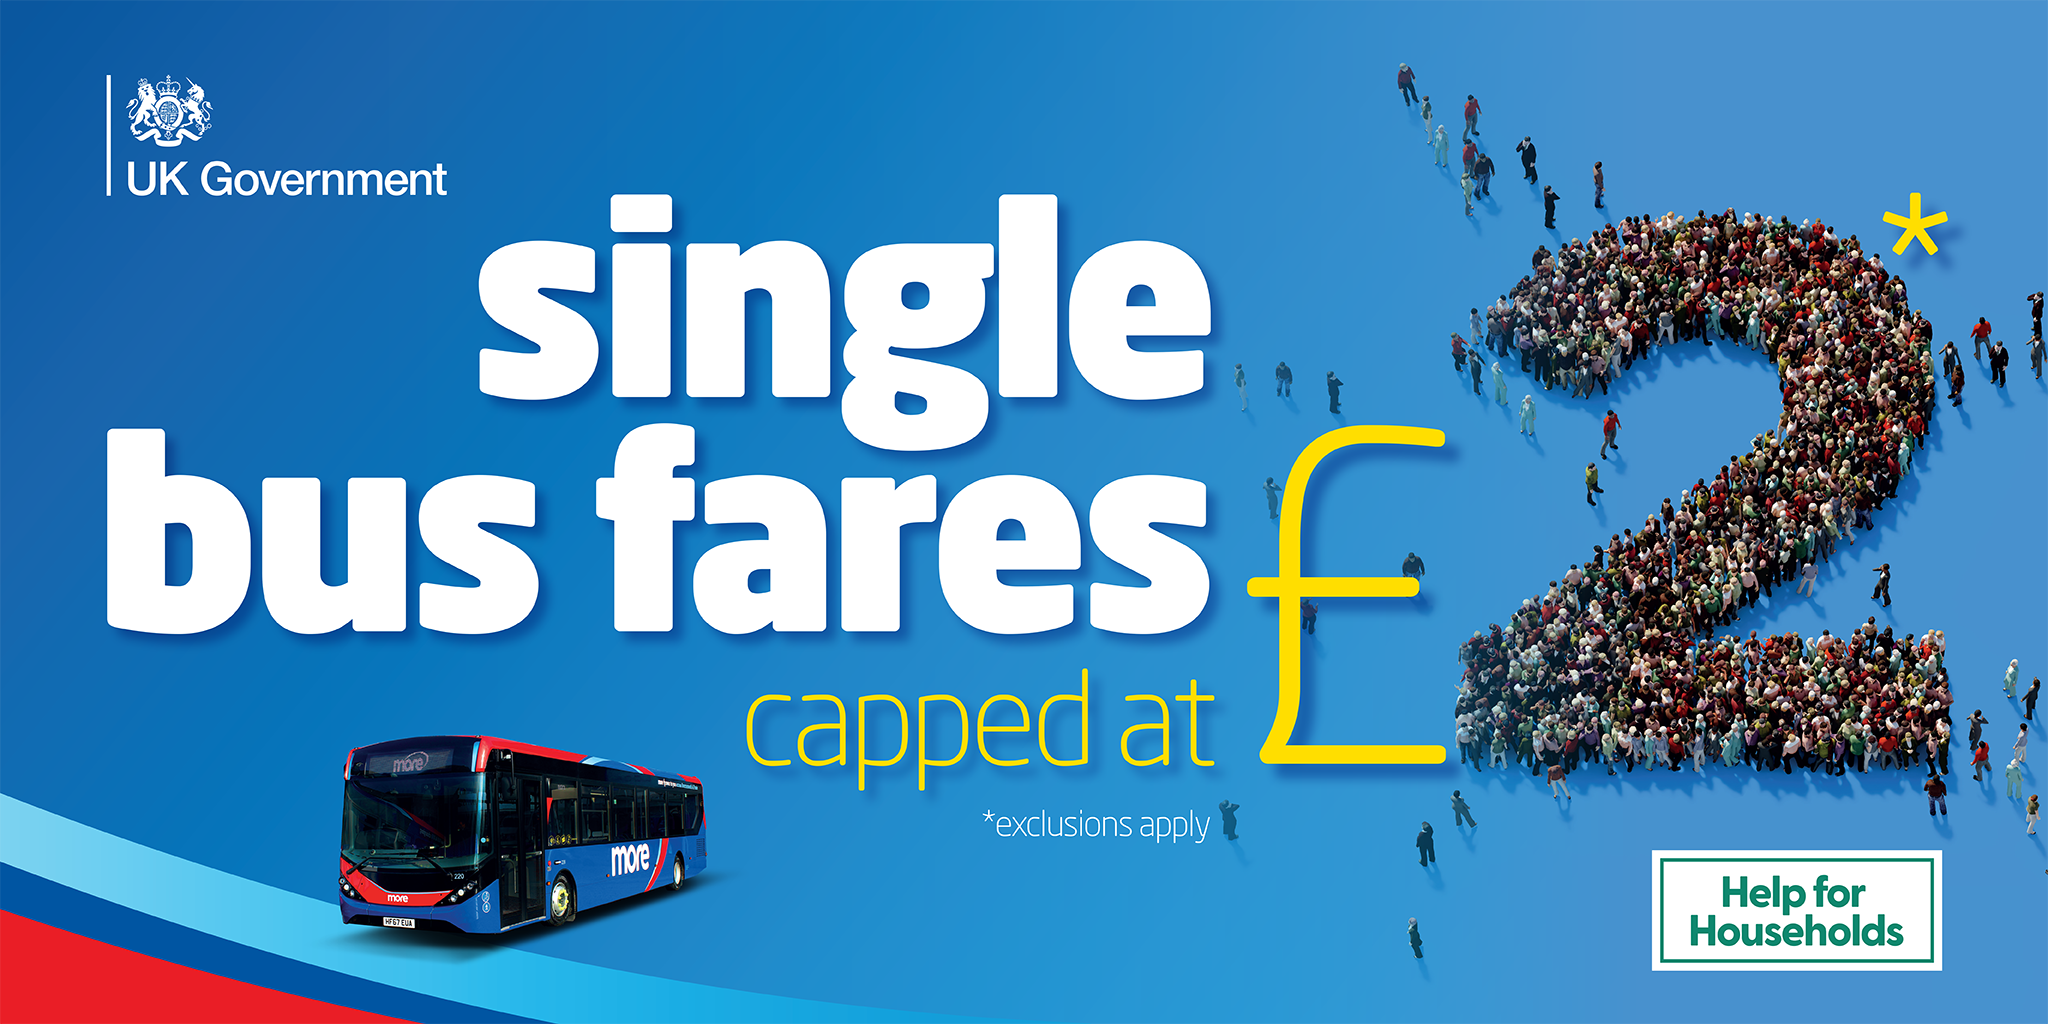 £2 single bus fares